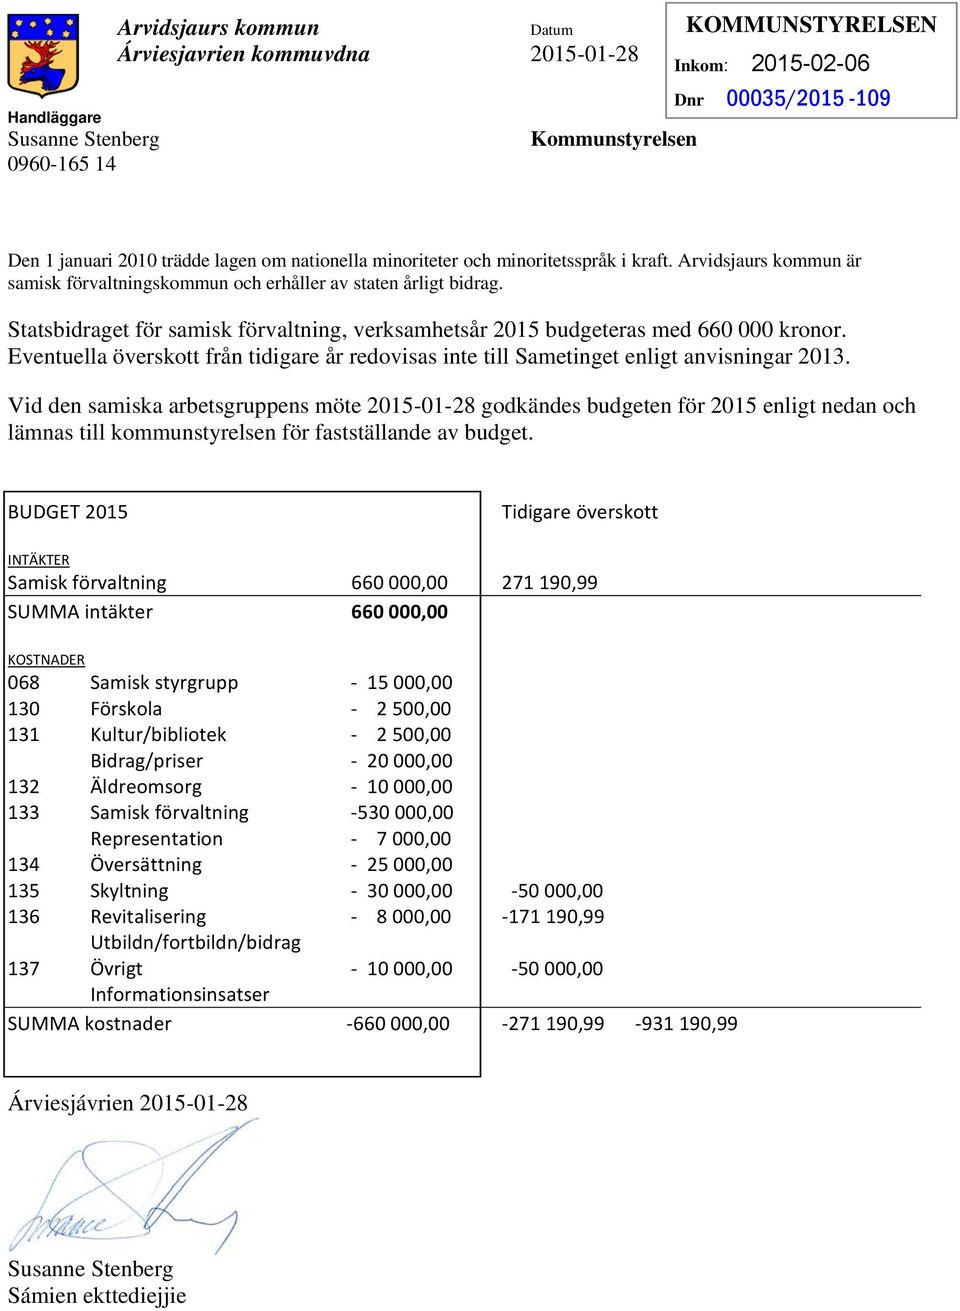 Statsbidraget för samisk förvaltning, verksamhetsår 2015 budgeteras med 660 000 kronor. Eventuella överskott från tidigare år redovisas inte till Sametinget enligt anvisningar 2013.